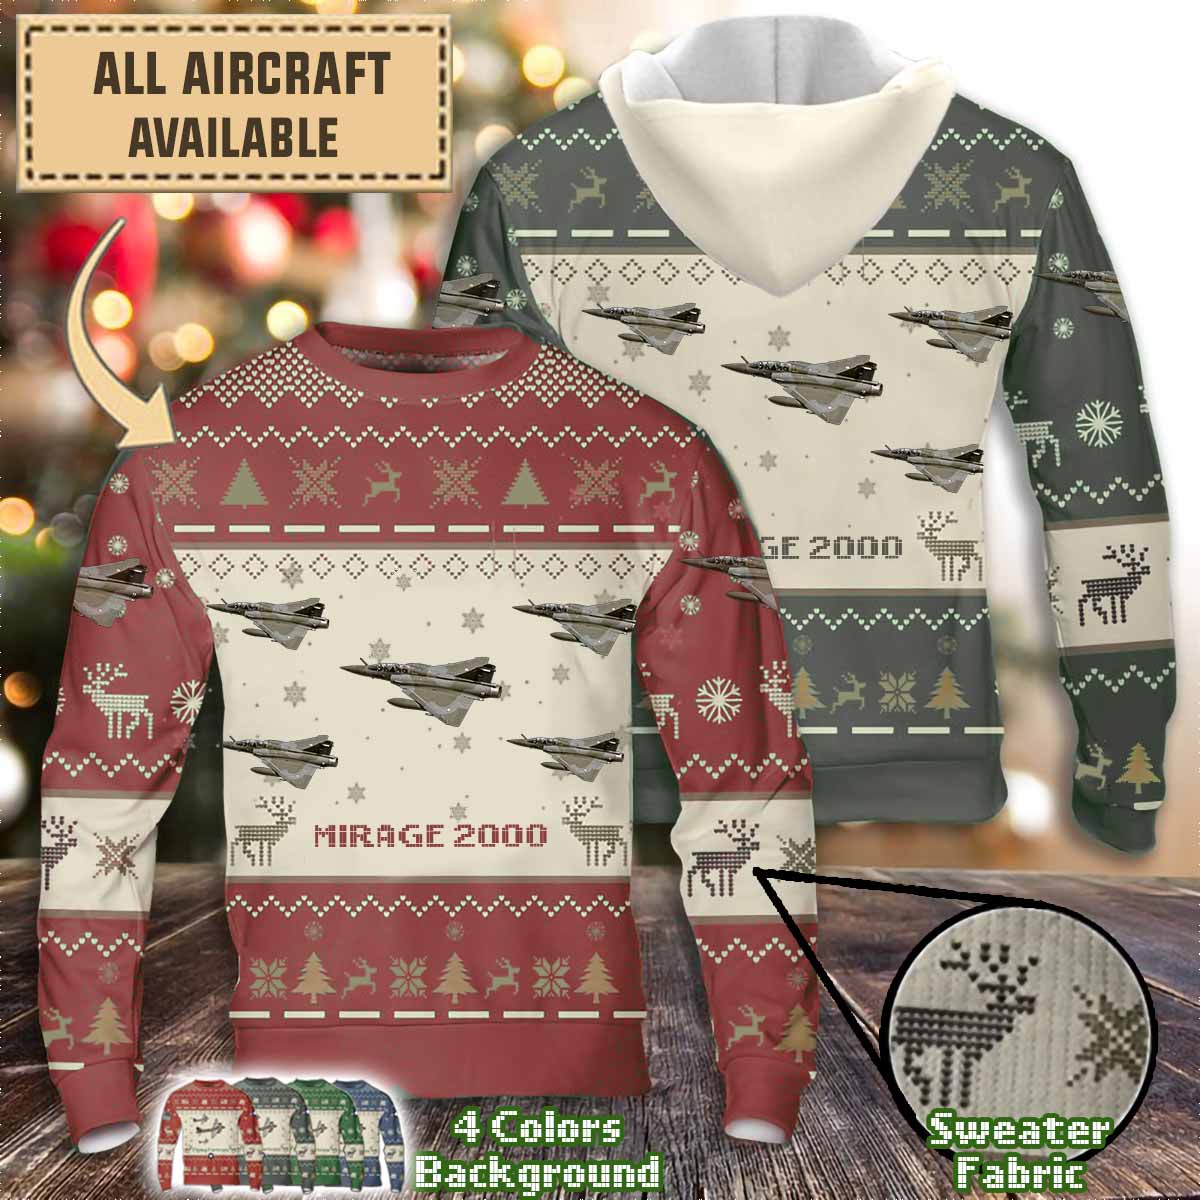 dassault mirage 2000aircraft sweater w8stb